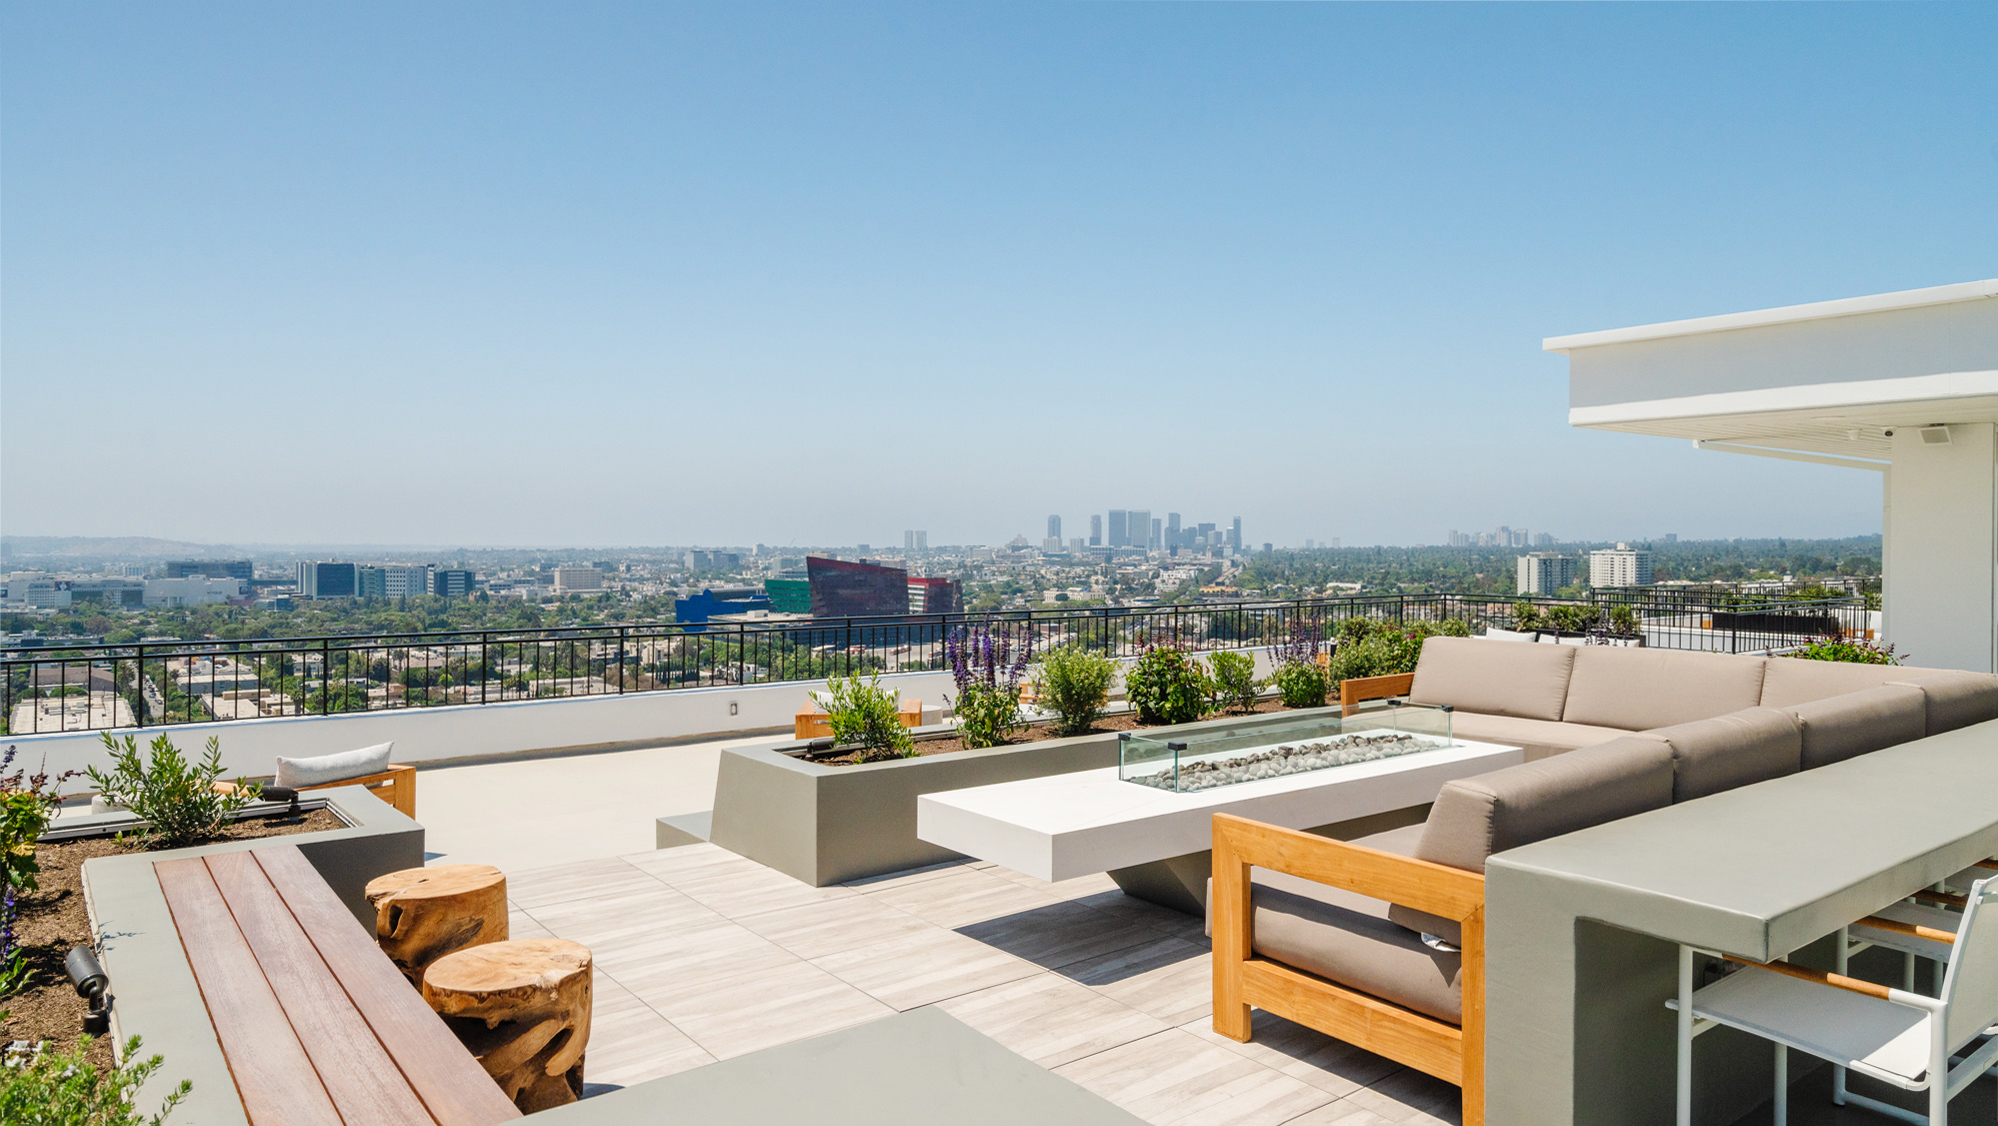 Inside John Corbett’s LA condo – listed for $1.31 million | Homes & Gardens